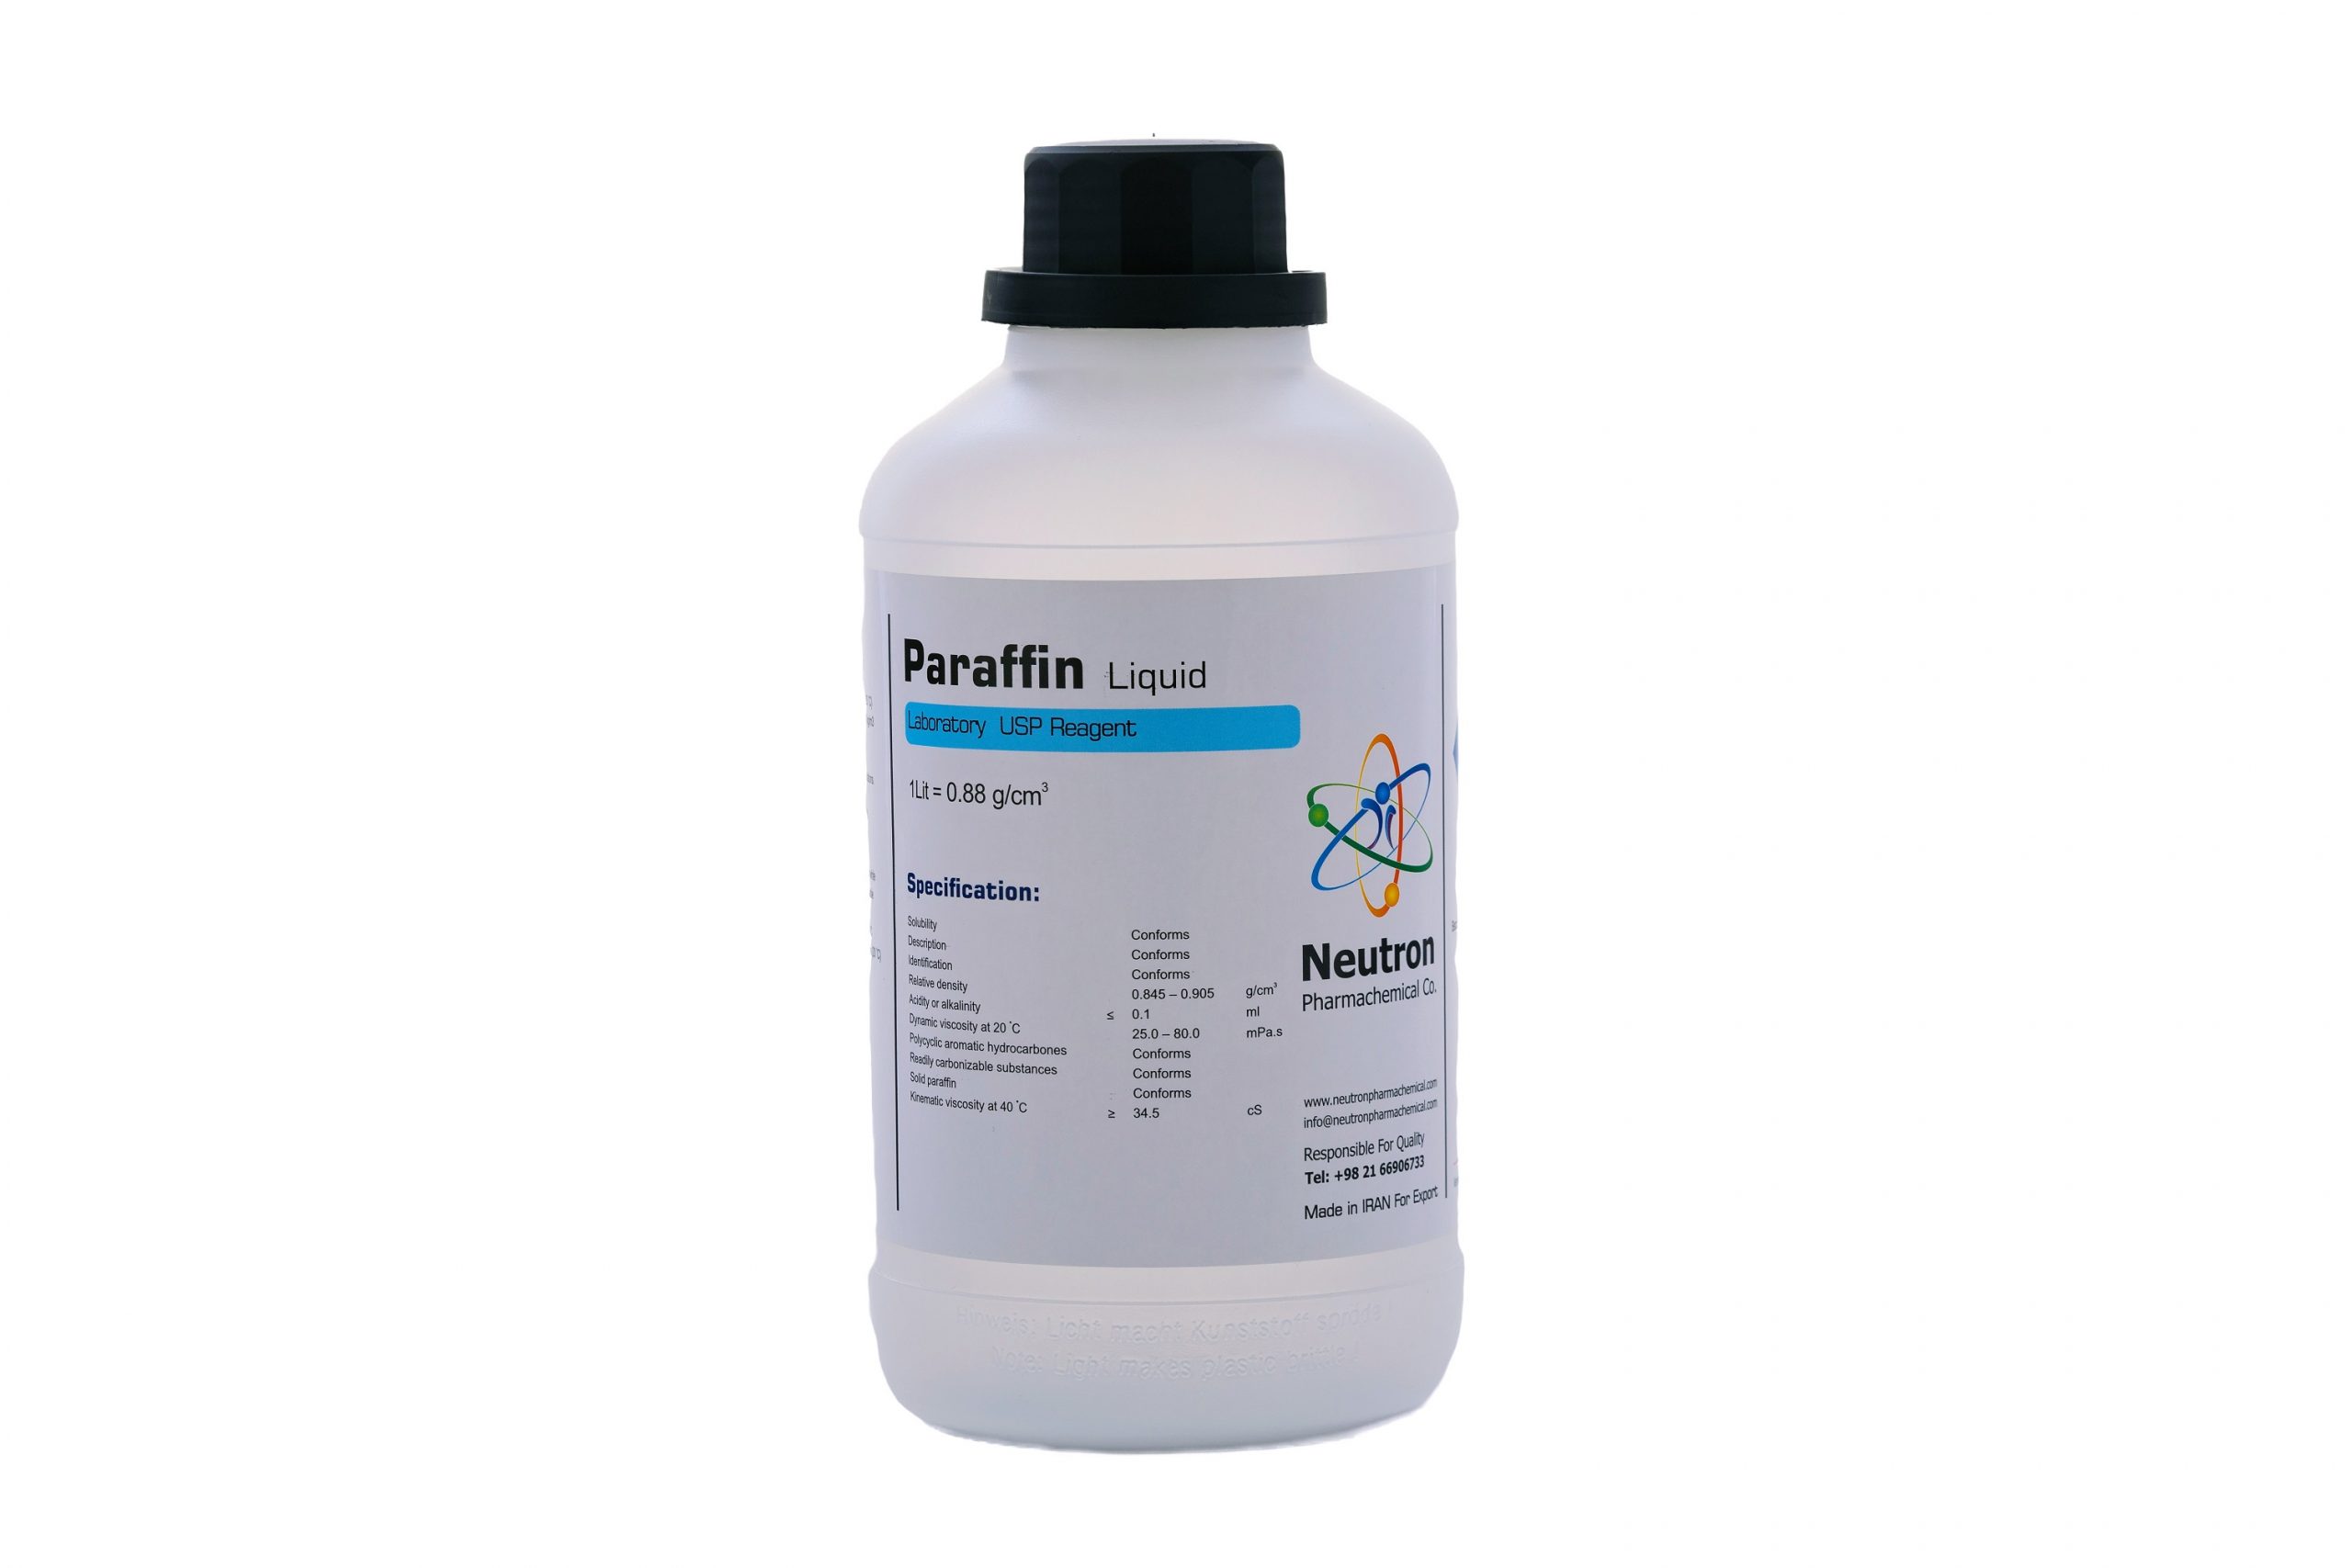 پارافین (مایع) 1 لیتری بطری پلاستیکی گرید USP، شیمی دارویی نوترون